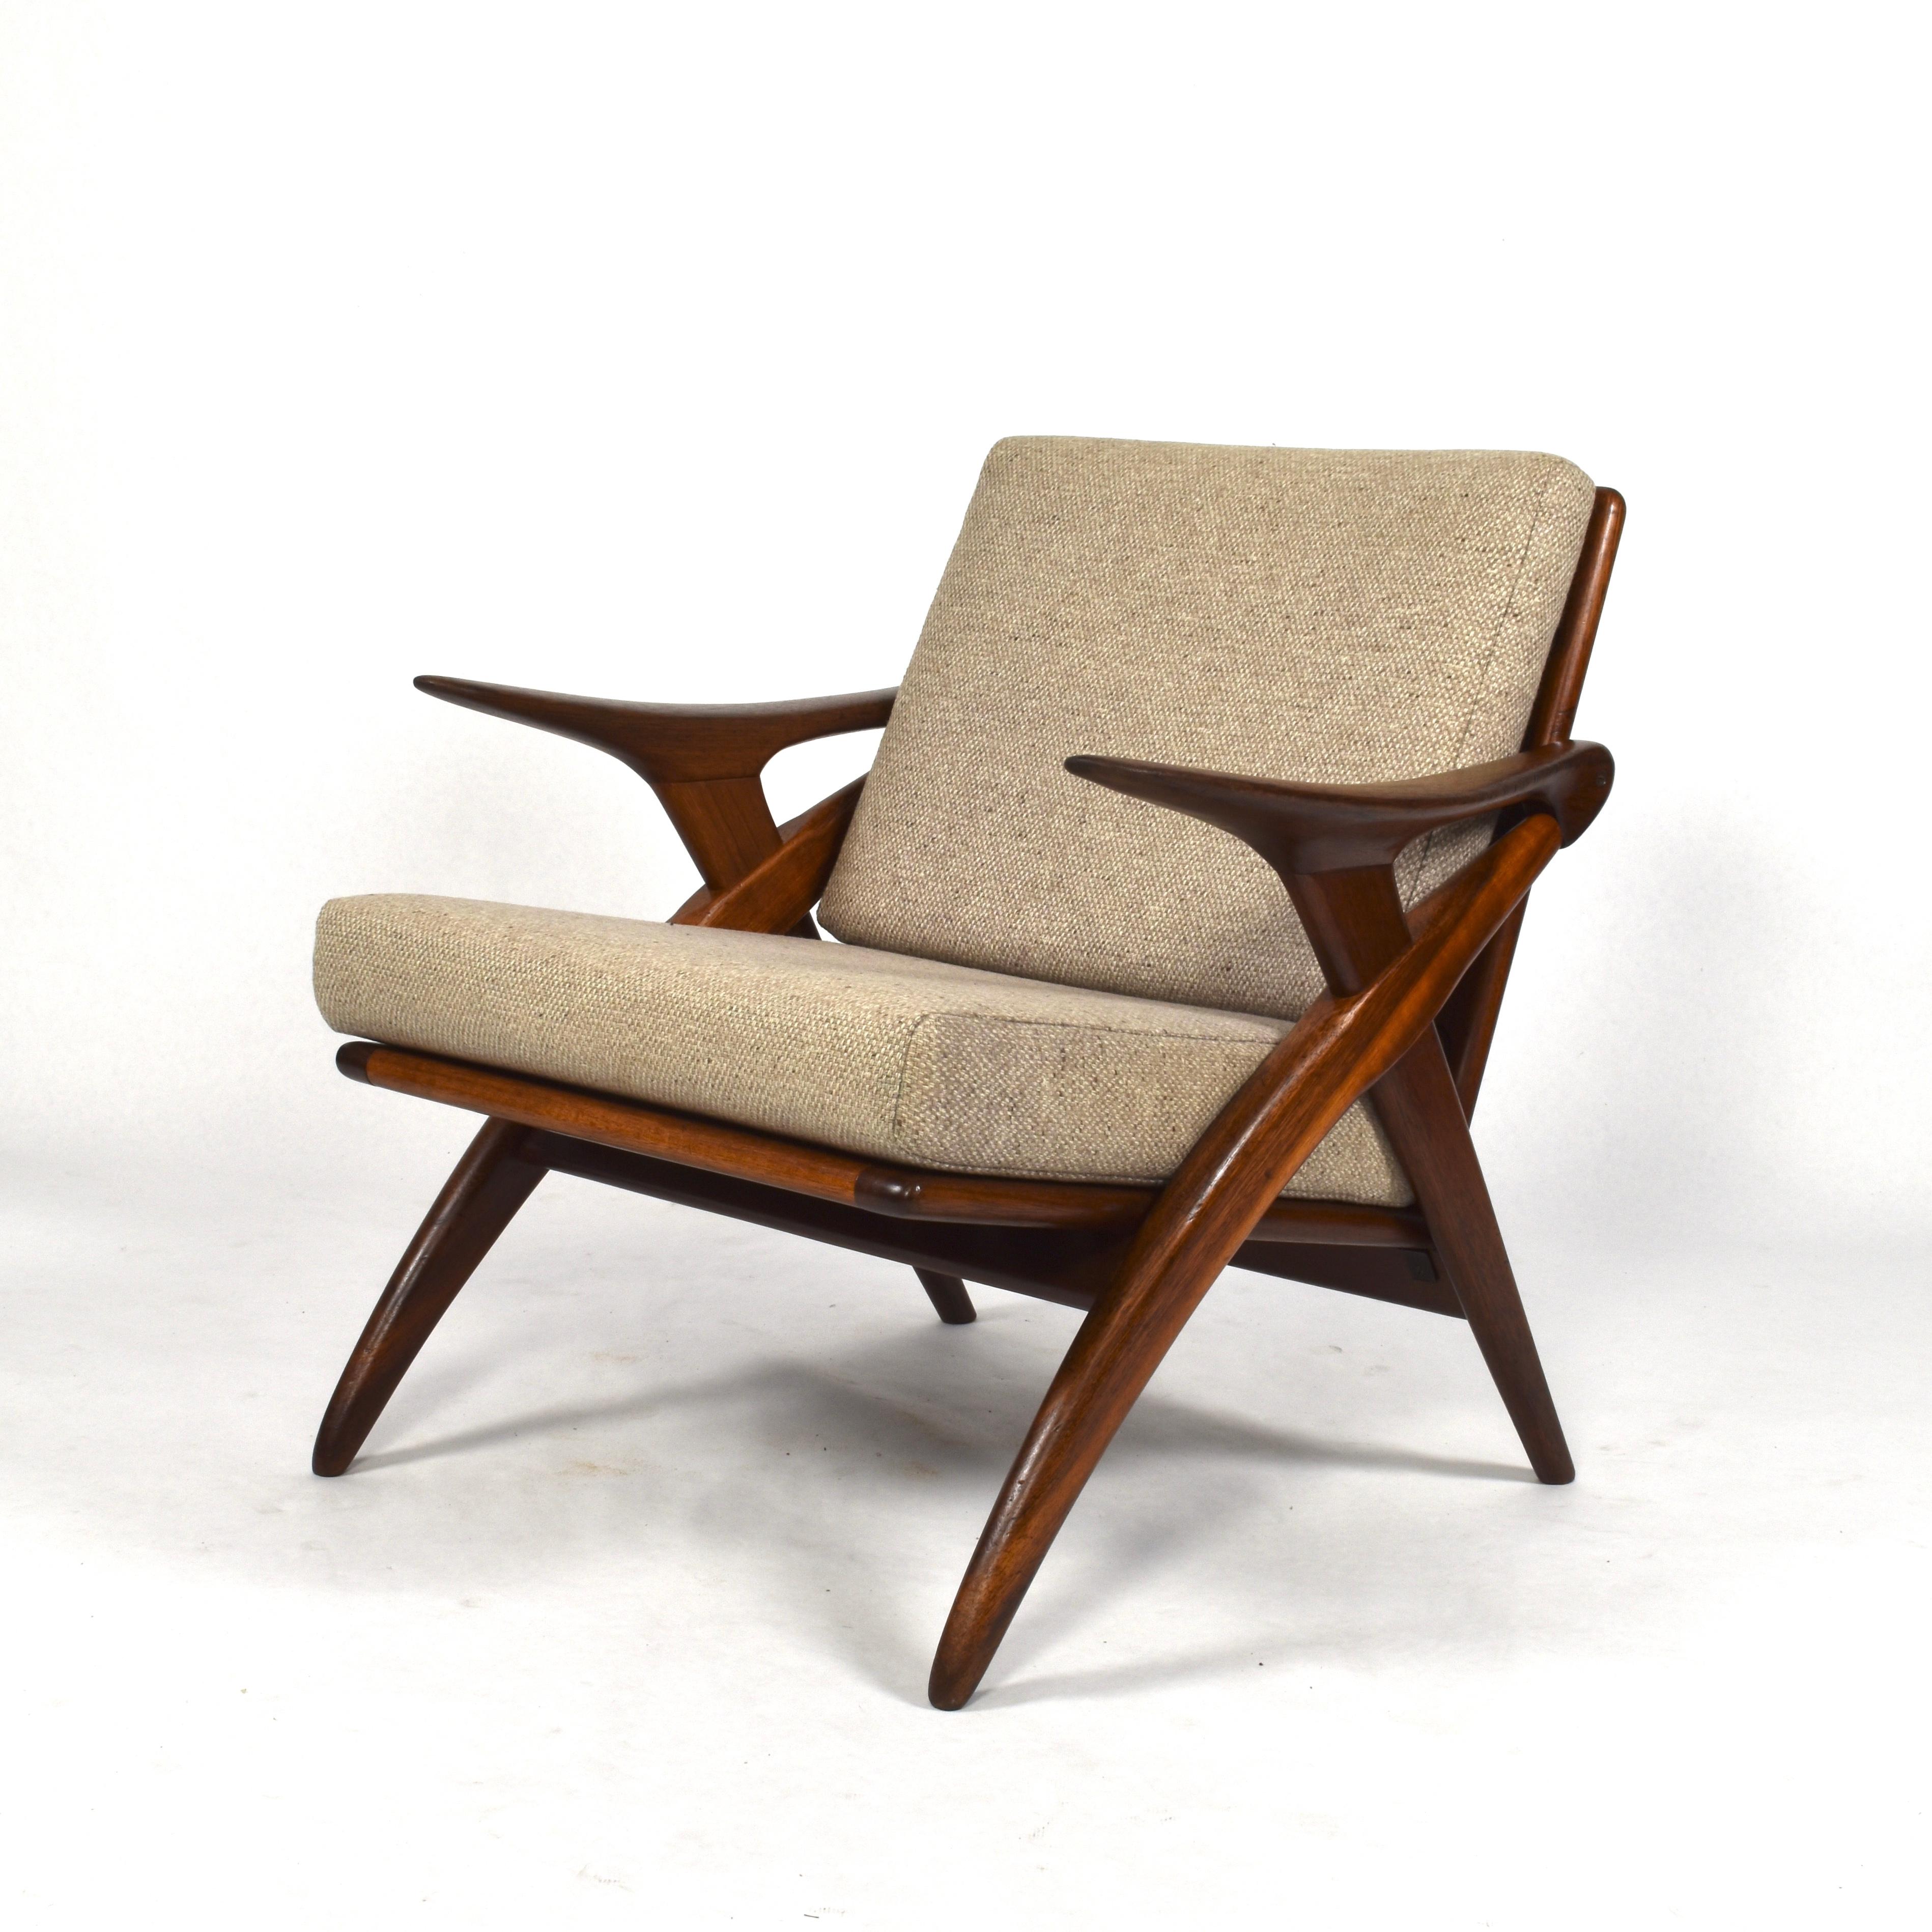 Mid-20th Century Teak Lounge Chair by De Ster Gelderland, Netherlands, circa 1960